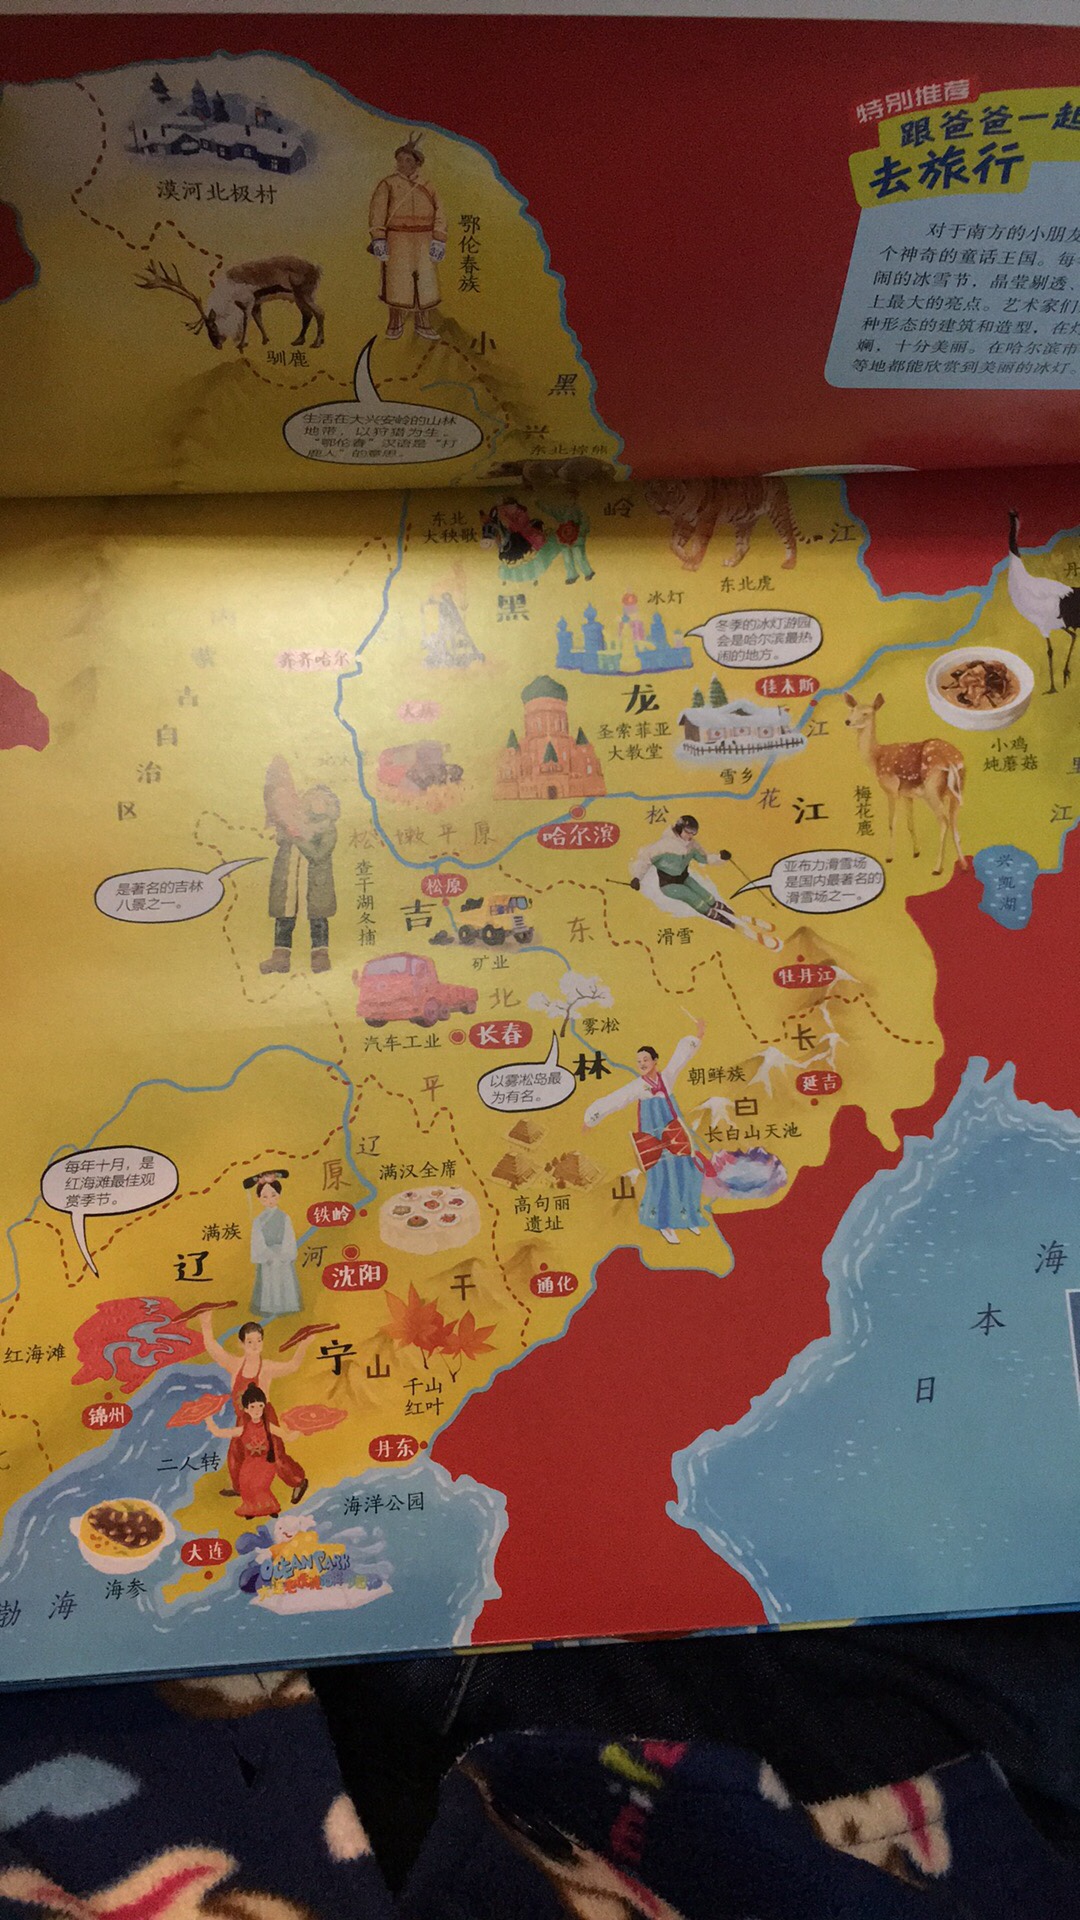 最近小朋友很喜欢问车牌是属于哪里，所以就给他买了2套地图。看了中国地图，里面内容对于5周岁孩子来说稍显凌乱，个人觉得每个省份还可以再详细点，这样可能更加好理解吧。以后再看看有没有适合的书入手。